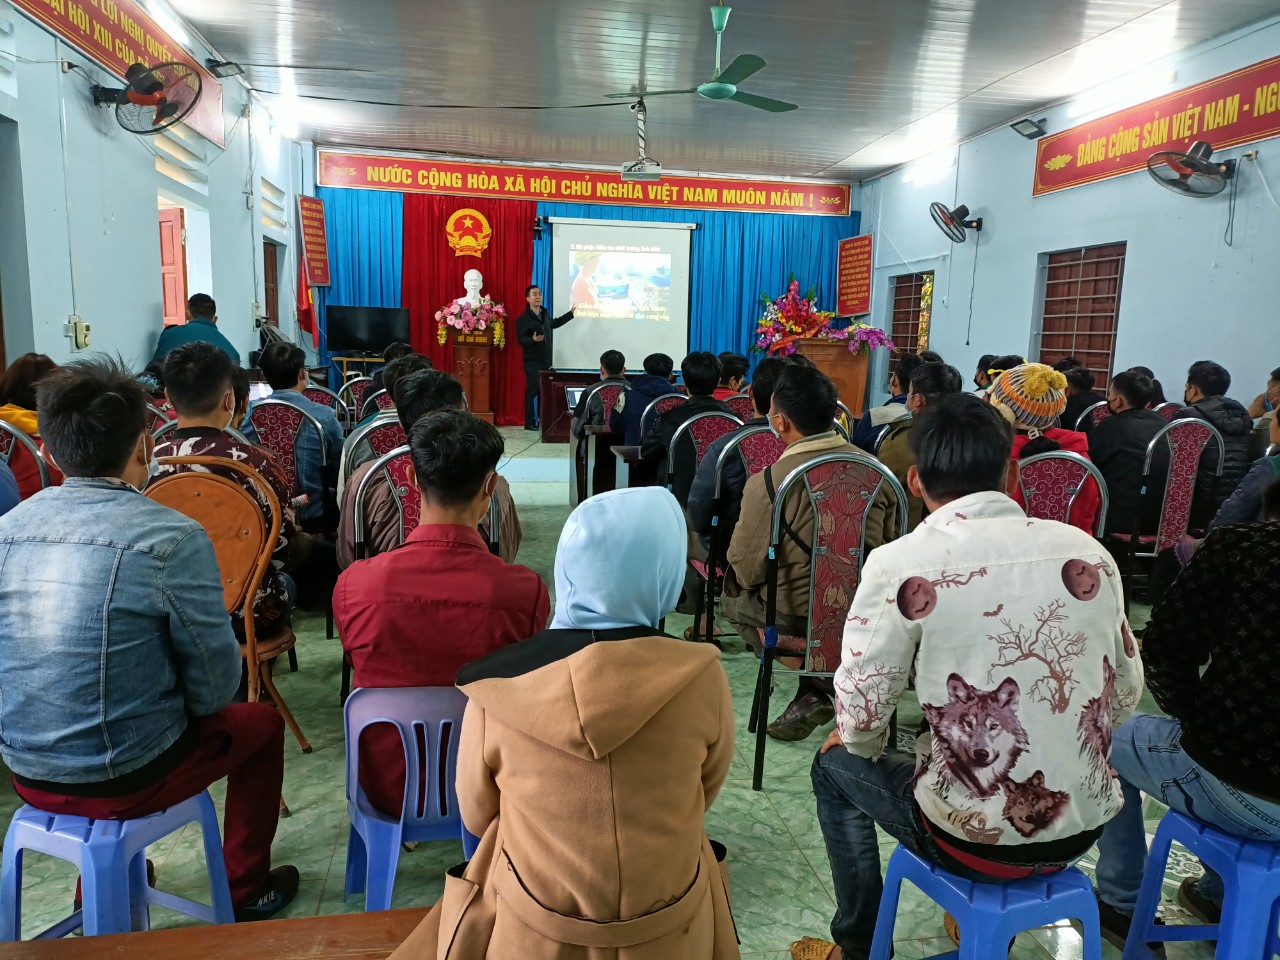 Trung tâm Dịch vụ việc làm tỉnh Hà Giang phối hợp với phòng Lao động - TBXH huyện Xín mần tổ chức Hội nghị tư vấn việc làm, xuất khẩu lao động cho người lao động trên địa bàn Xã Pà Vầy Sủ